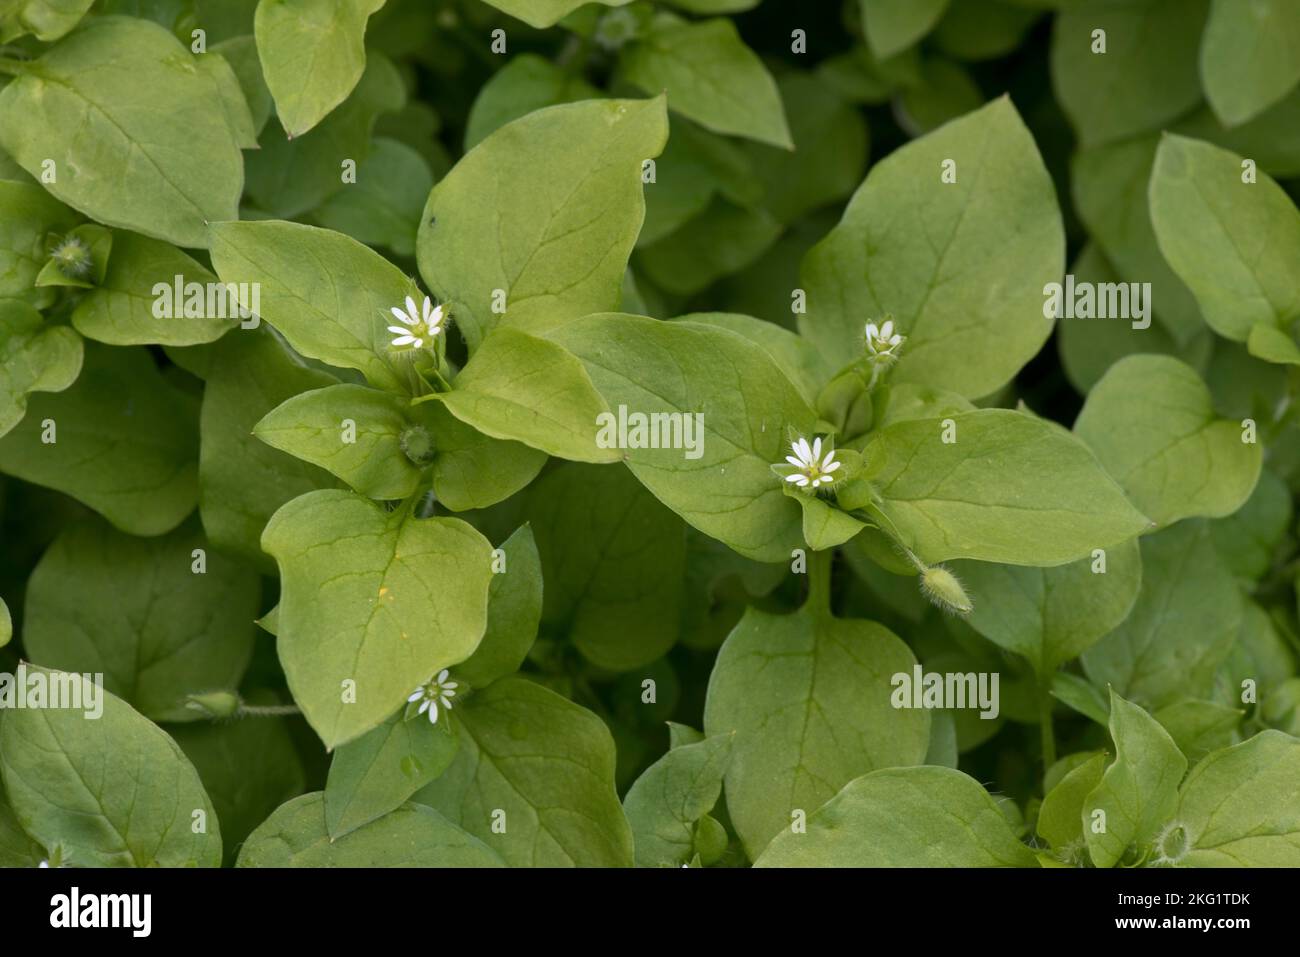 Plante herbeuse annuelle à fleurs de l'herbe commune (Stellaria media), avec de petites fleurs parmi les feuilles vertes, Berkshire, septembre Banque D'Images